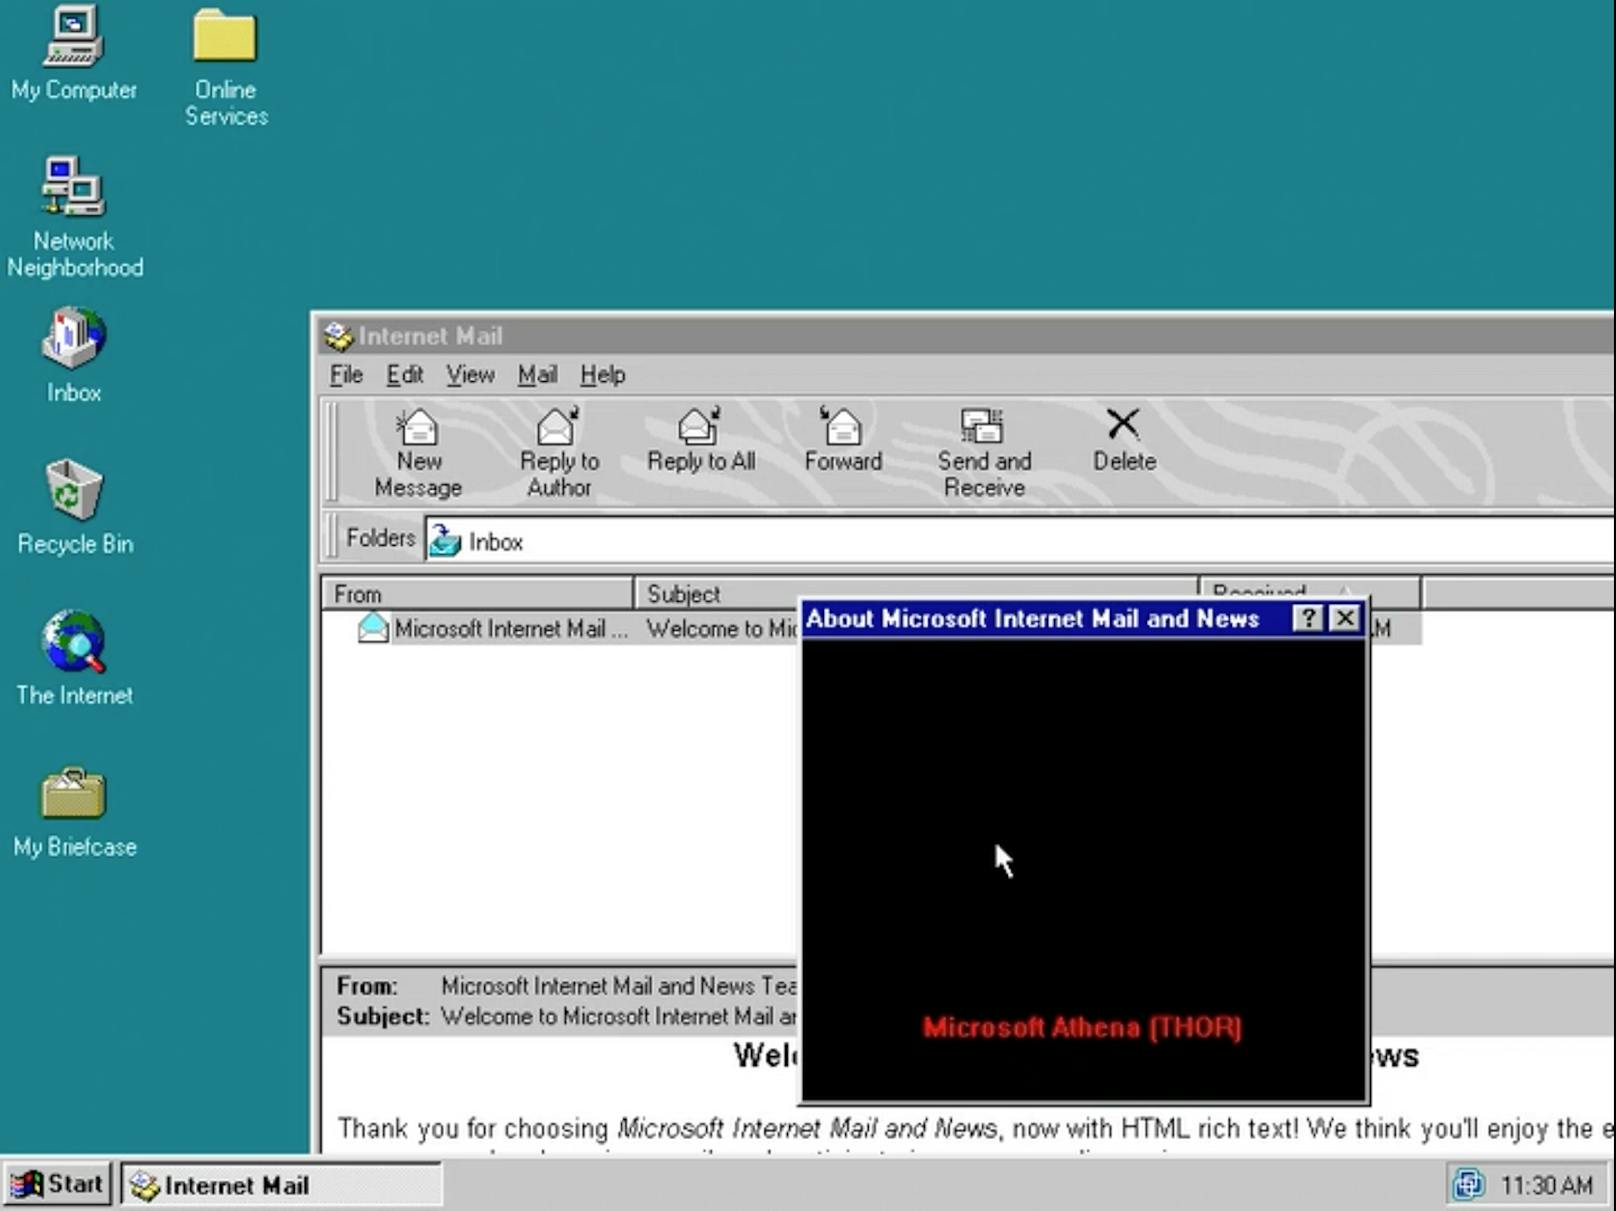 Geheime Windows-Botschaft blieb 25 Jahre unentdeckt